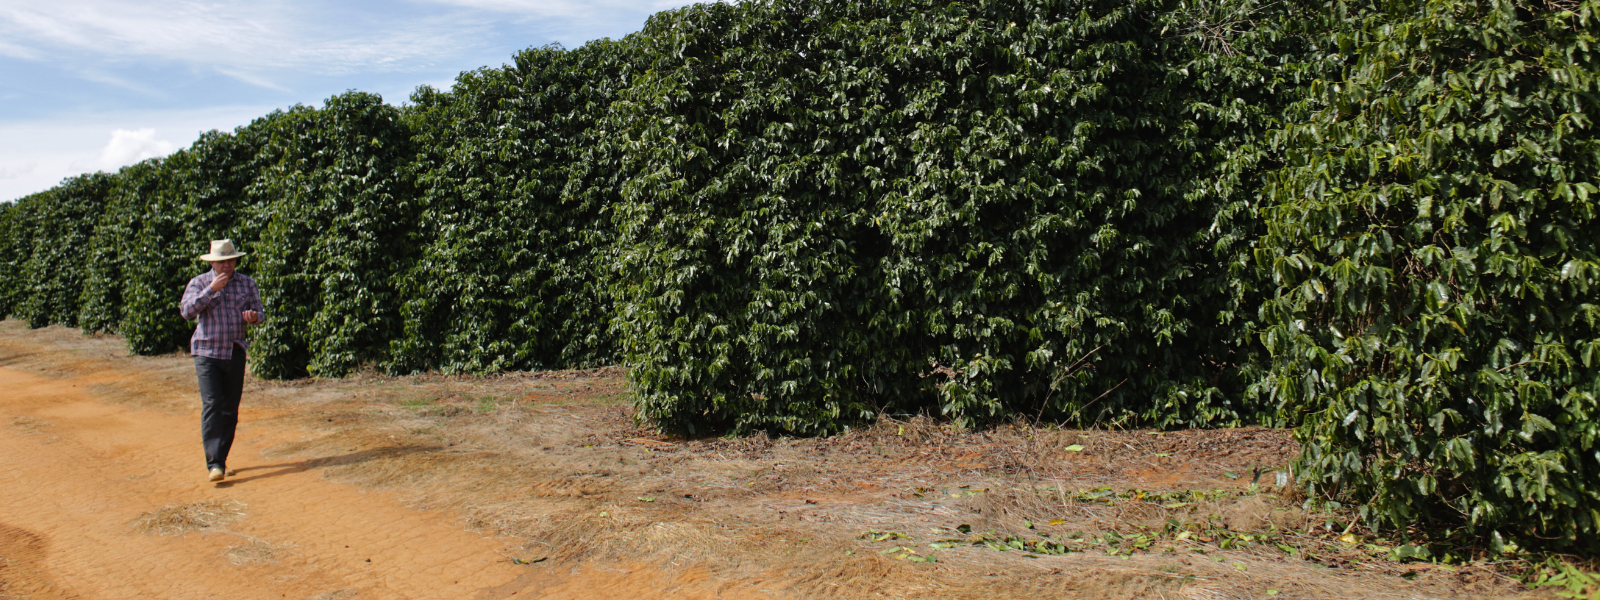 Coffee farm in Brazil